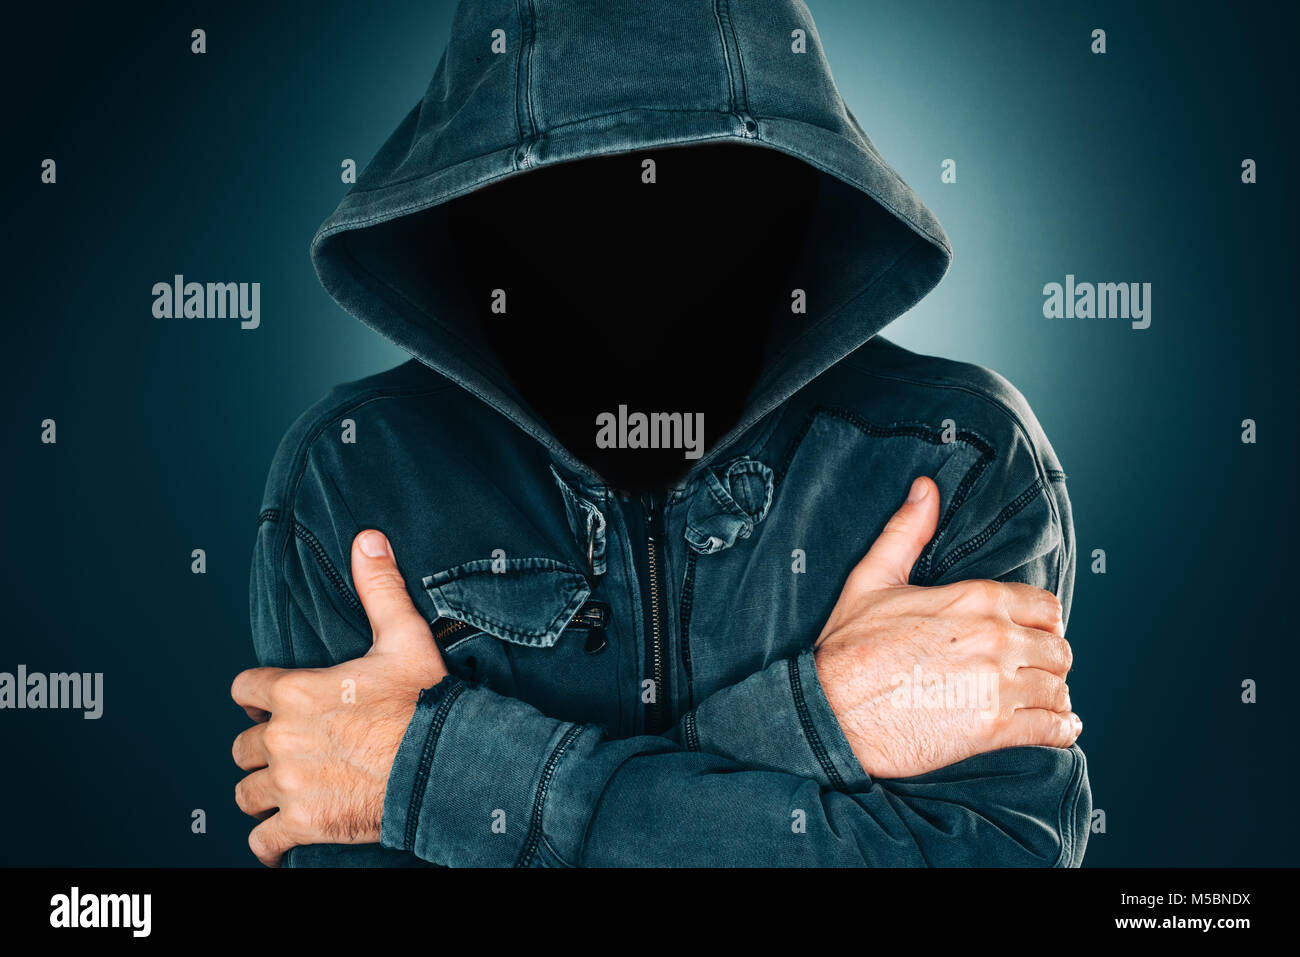 Sospette misterioso uomo senza volto con hoodie, scuro bassa ritratto della chiave per il crimine e la violenza dei concetti Foto Stock